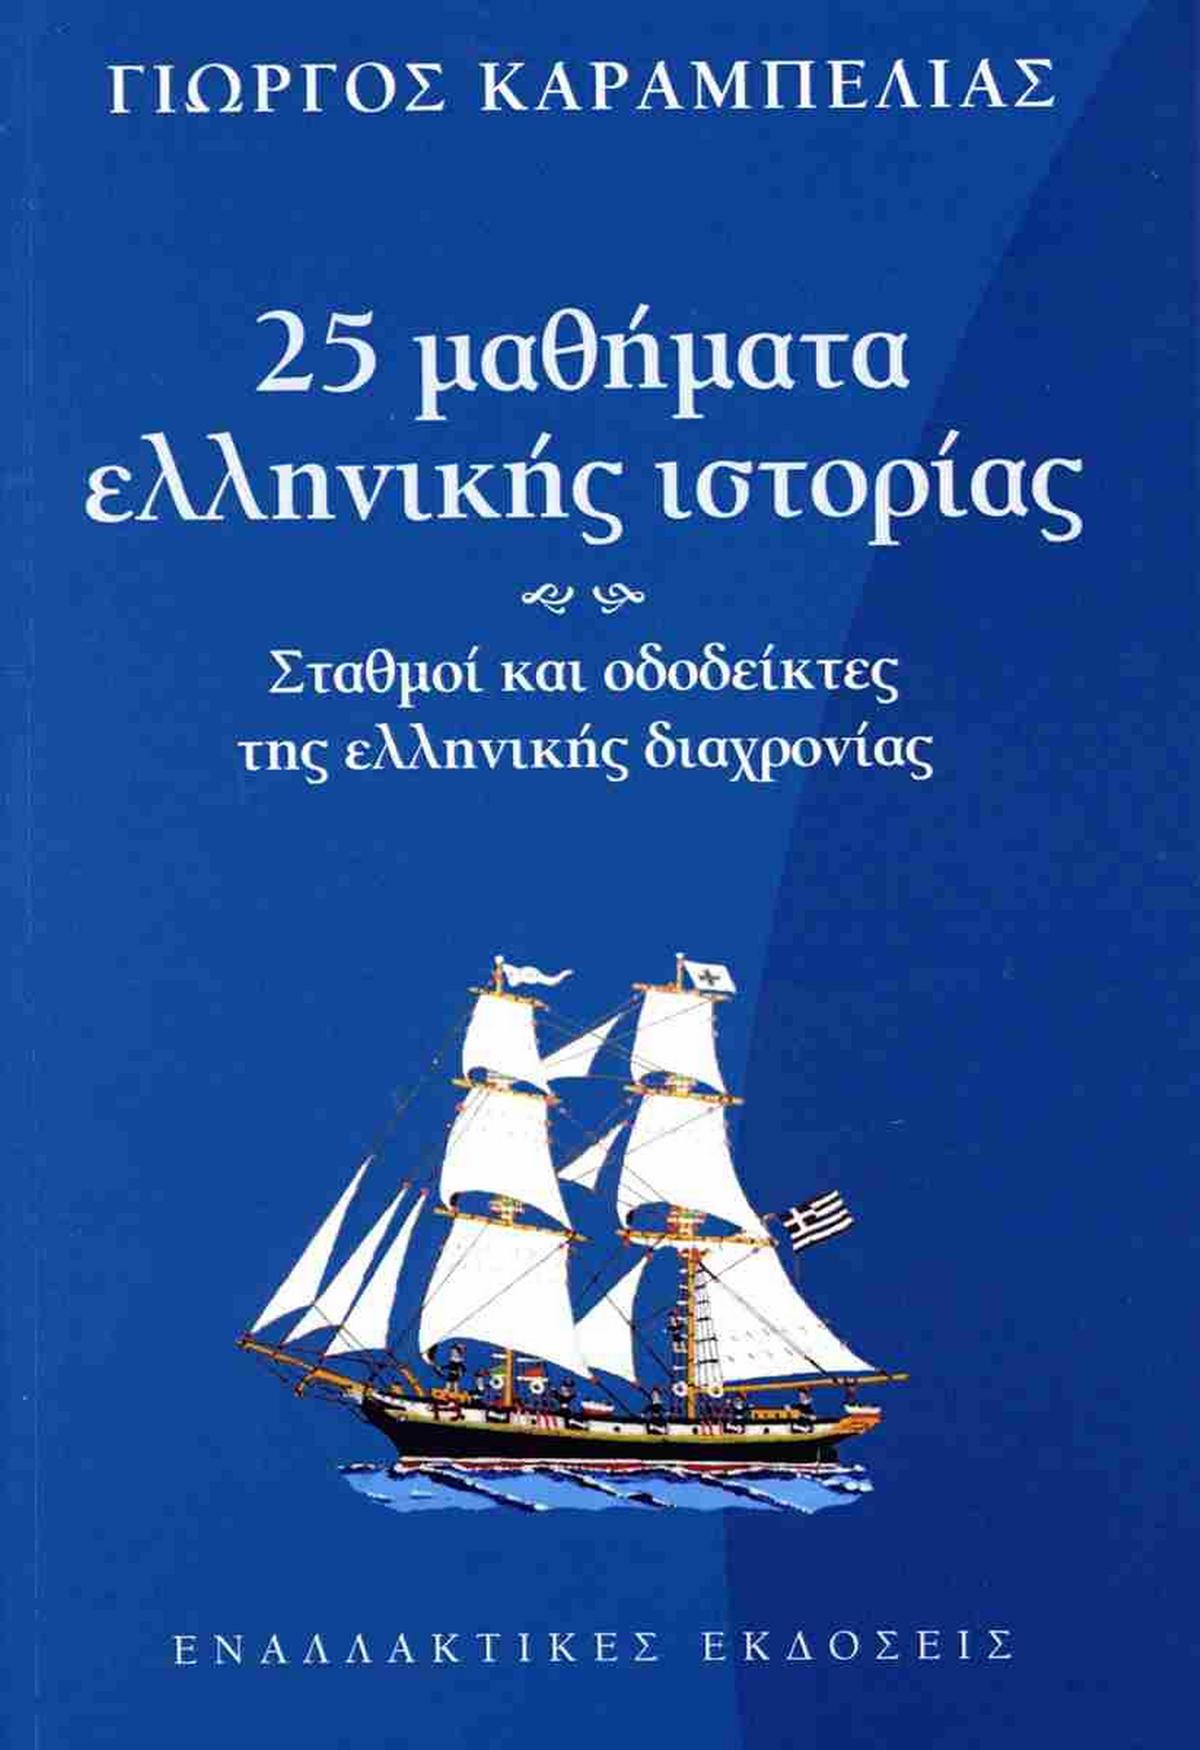 25 μαθήματα ελληνικής ιστορίας